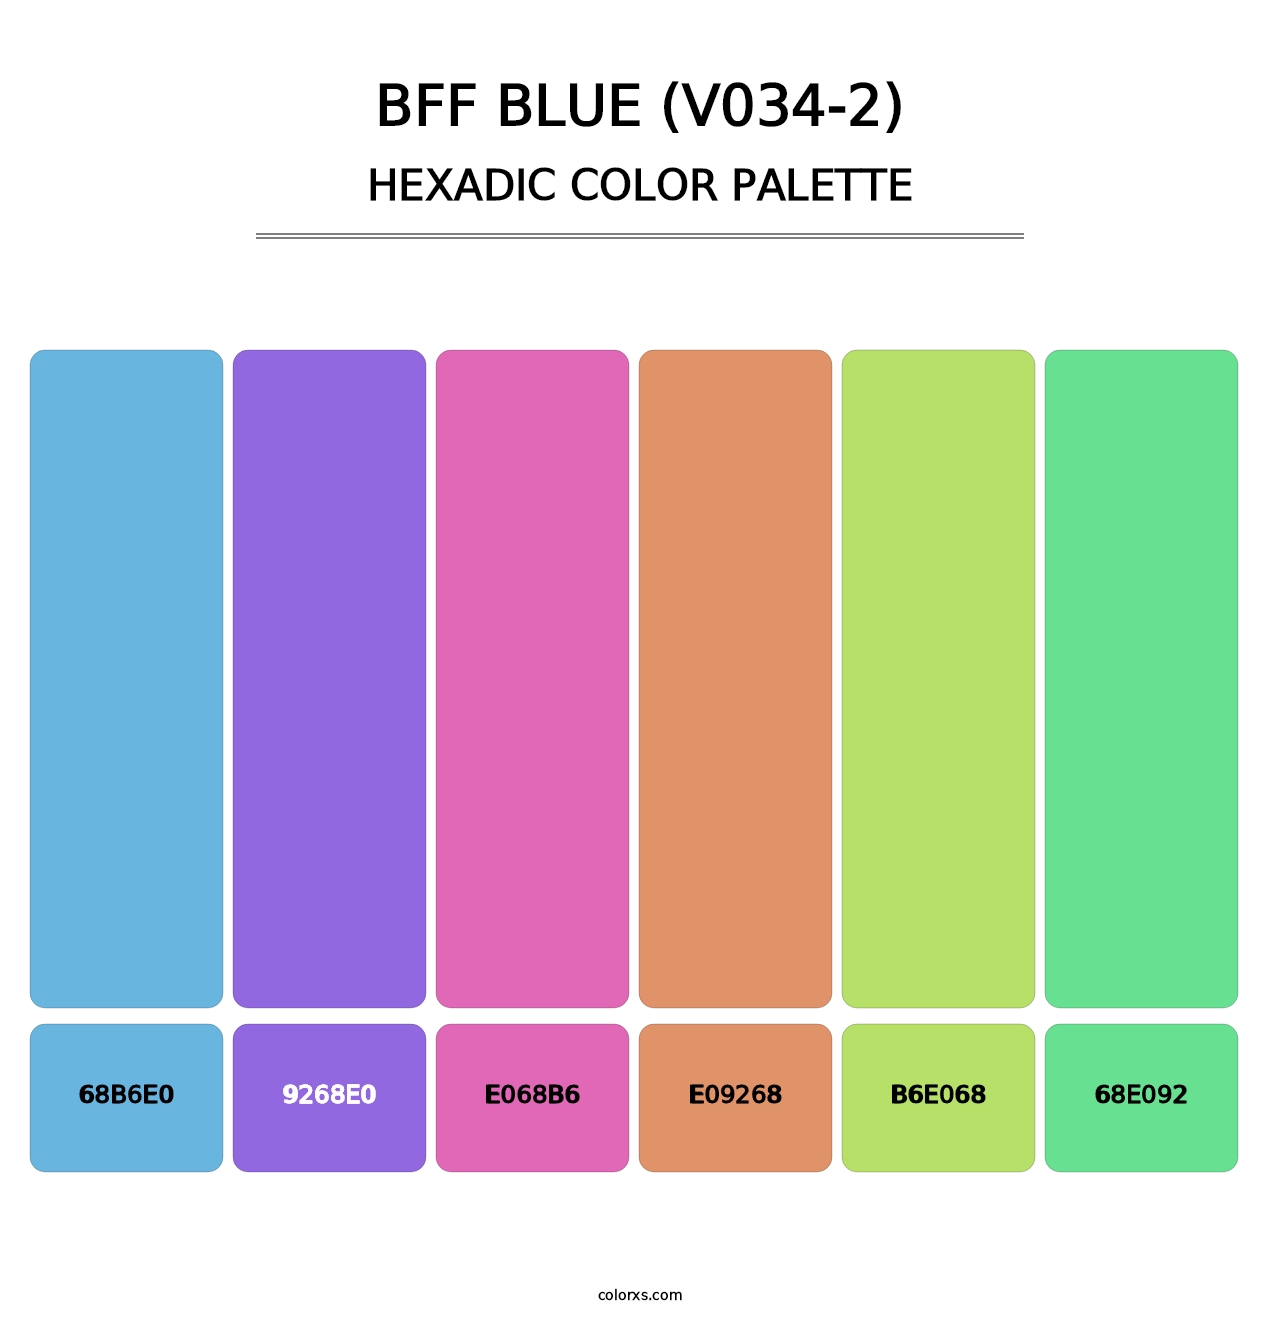 BFF Blue (V034-2) - Hexadic Color Palette